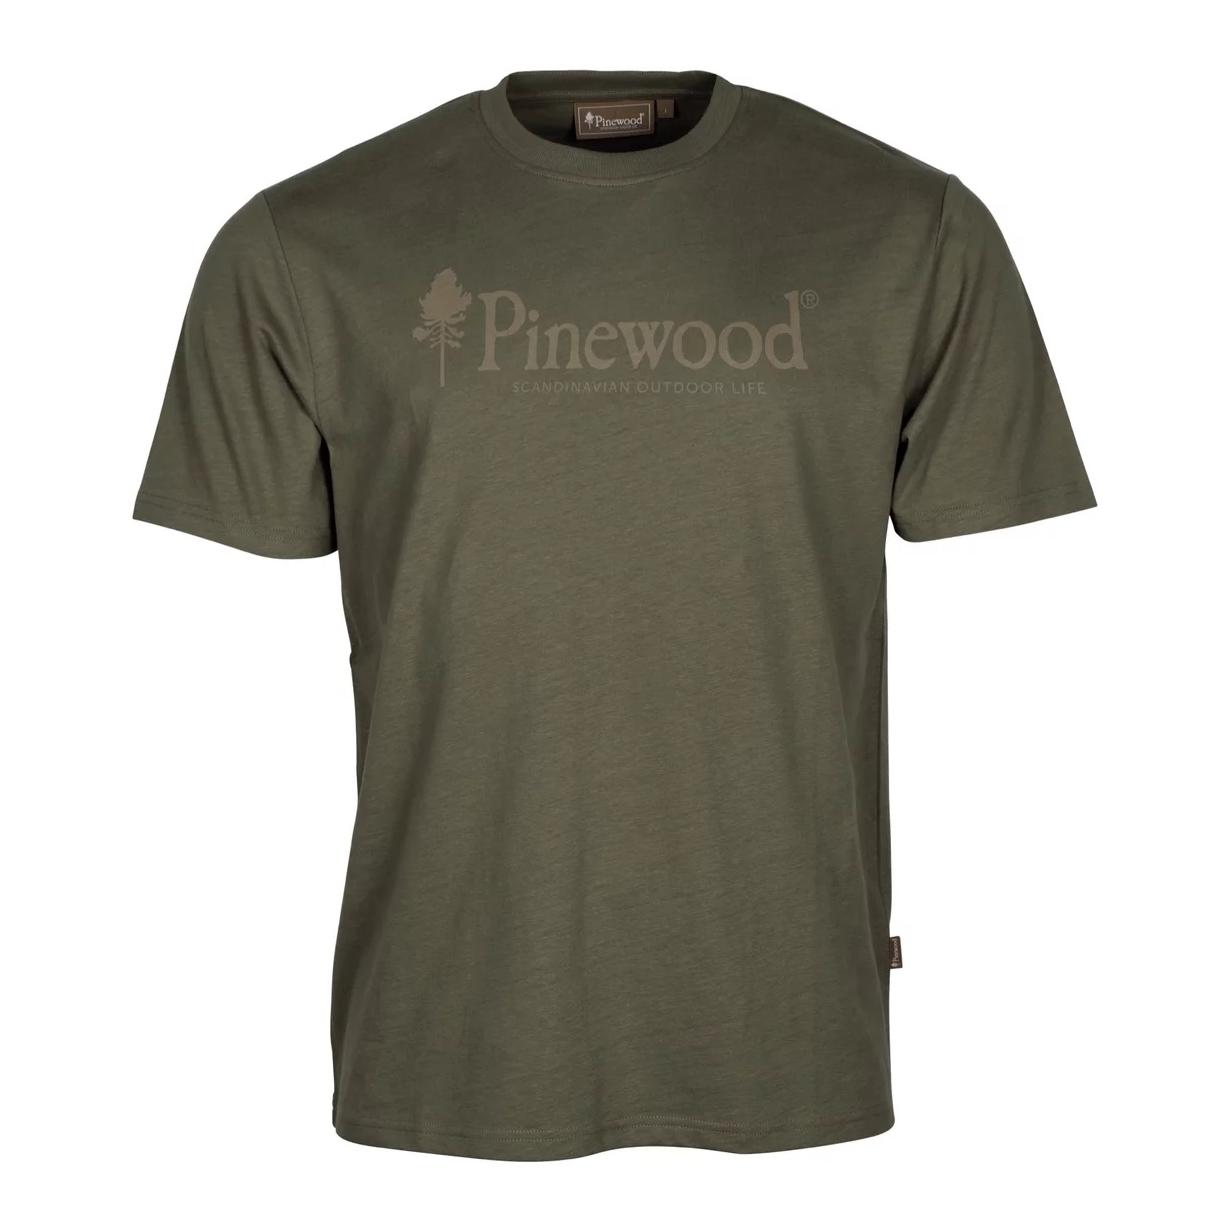 Pinewood Outdoor Life T-shirt Men